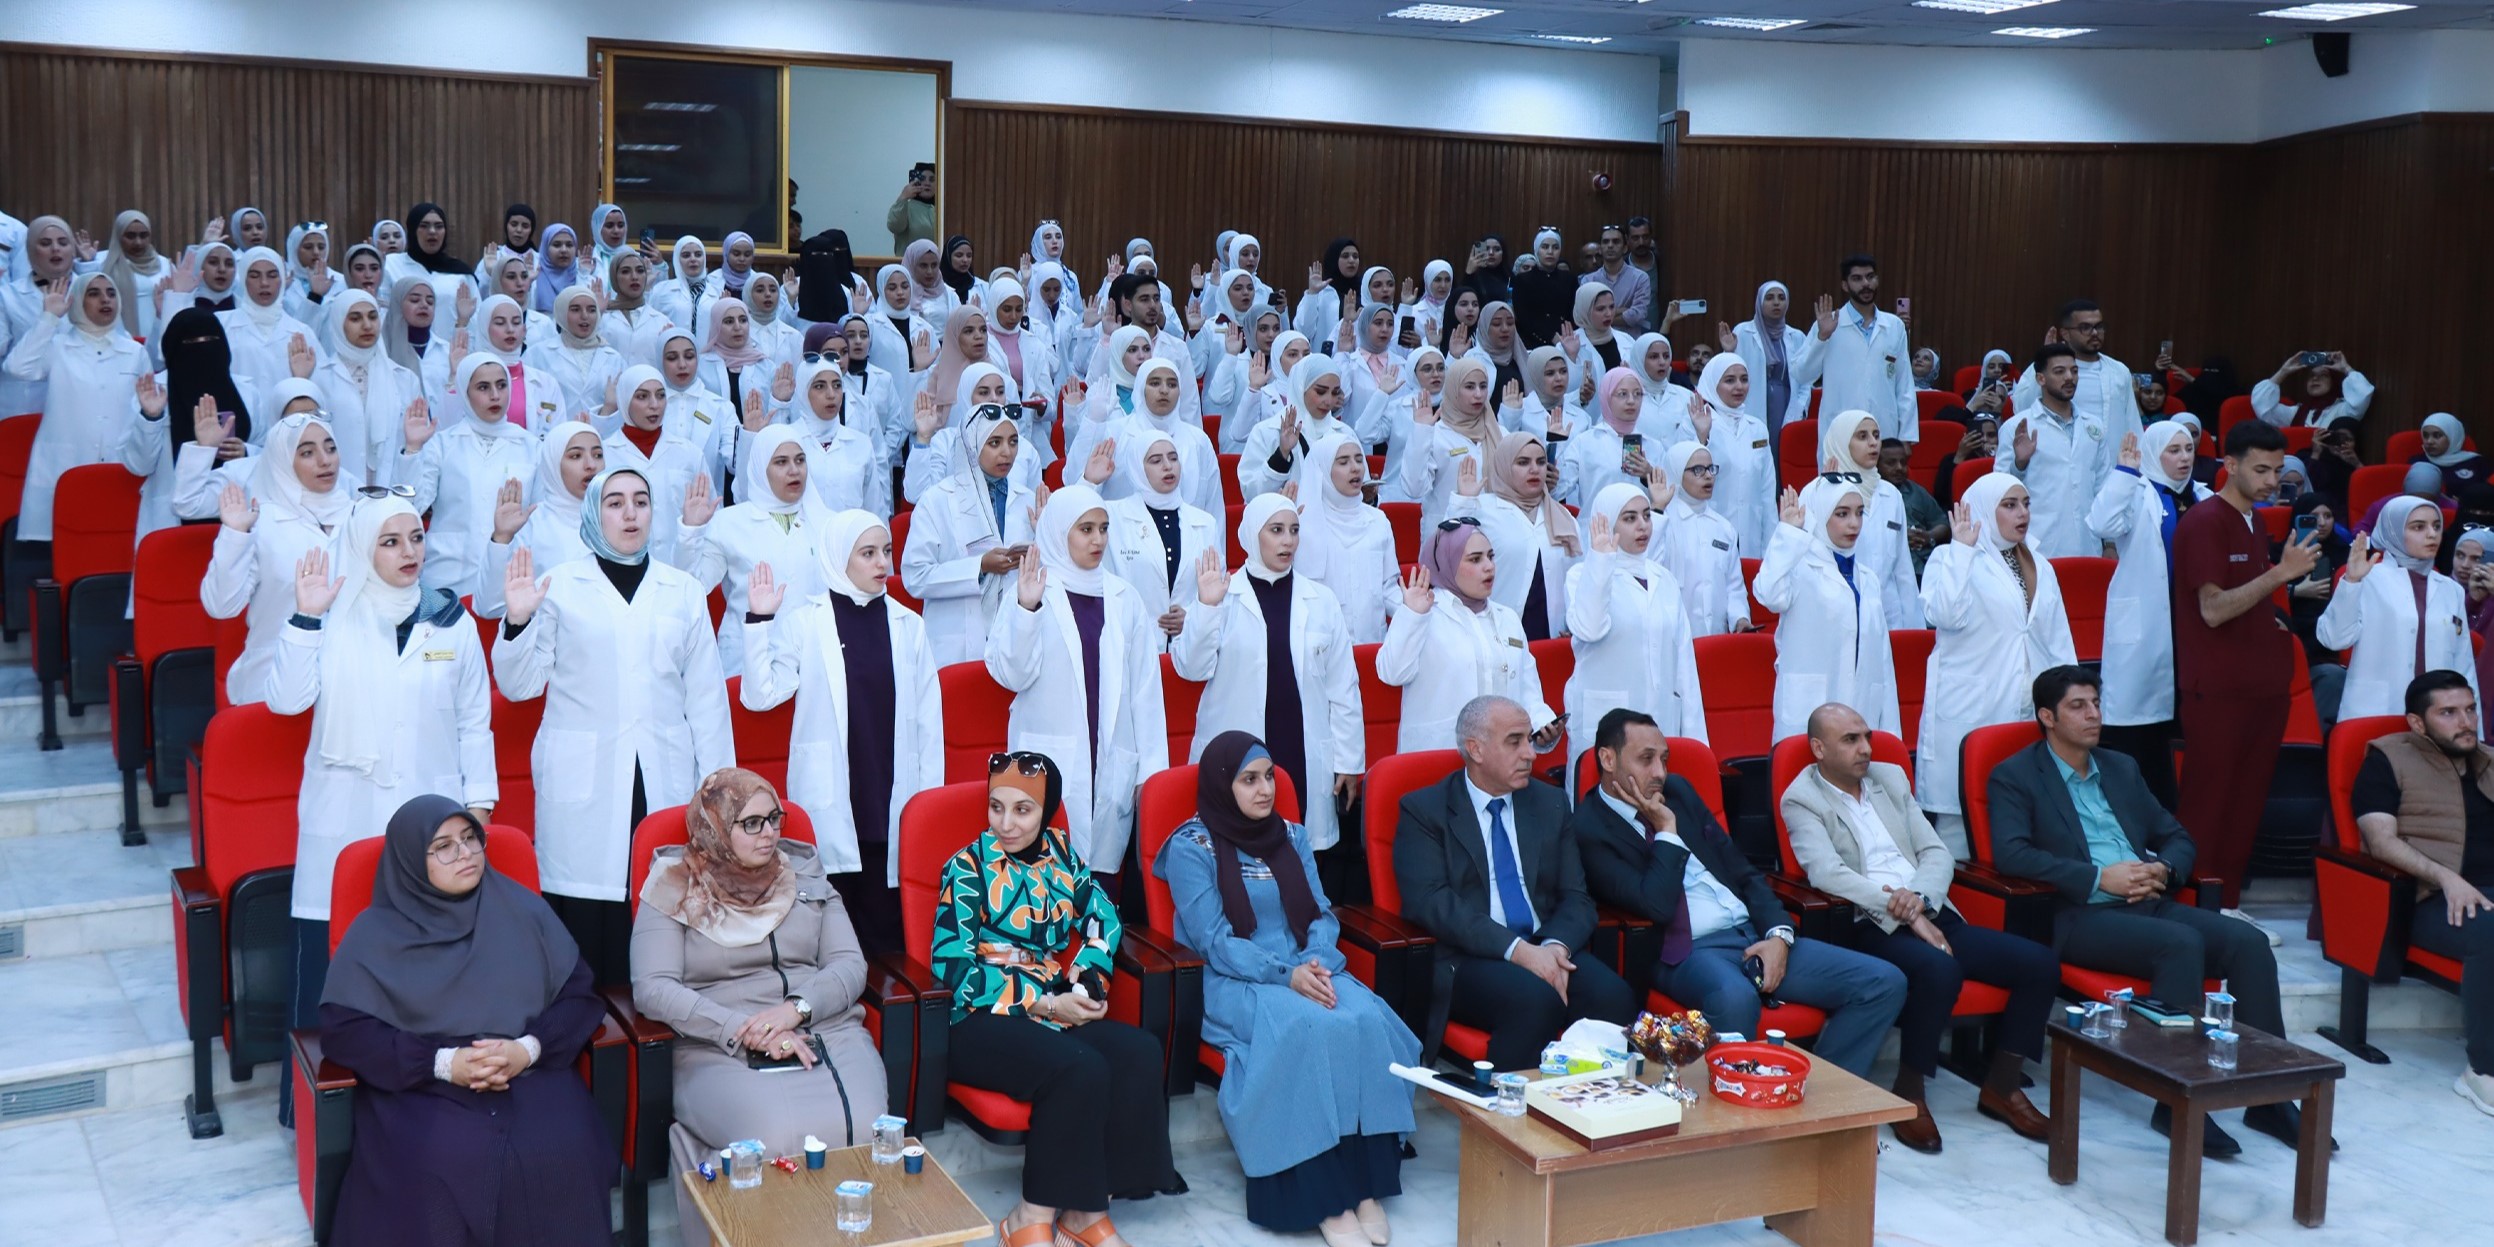  حفل أداء القسم القانوني لطلبة كلية الاميرة عائشة بنت الحسين للتمريض والعلوم الصحية بجامعة الحسين بن طلال